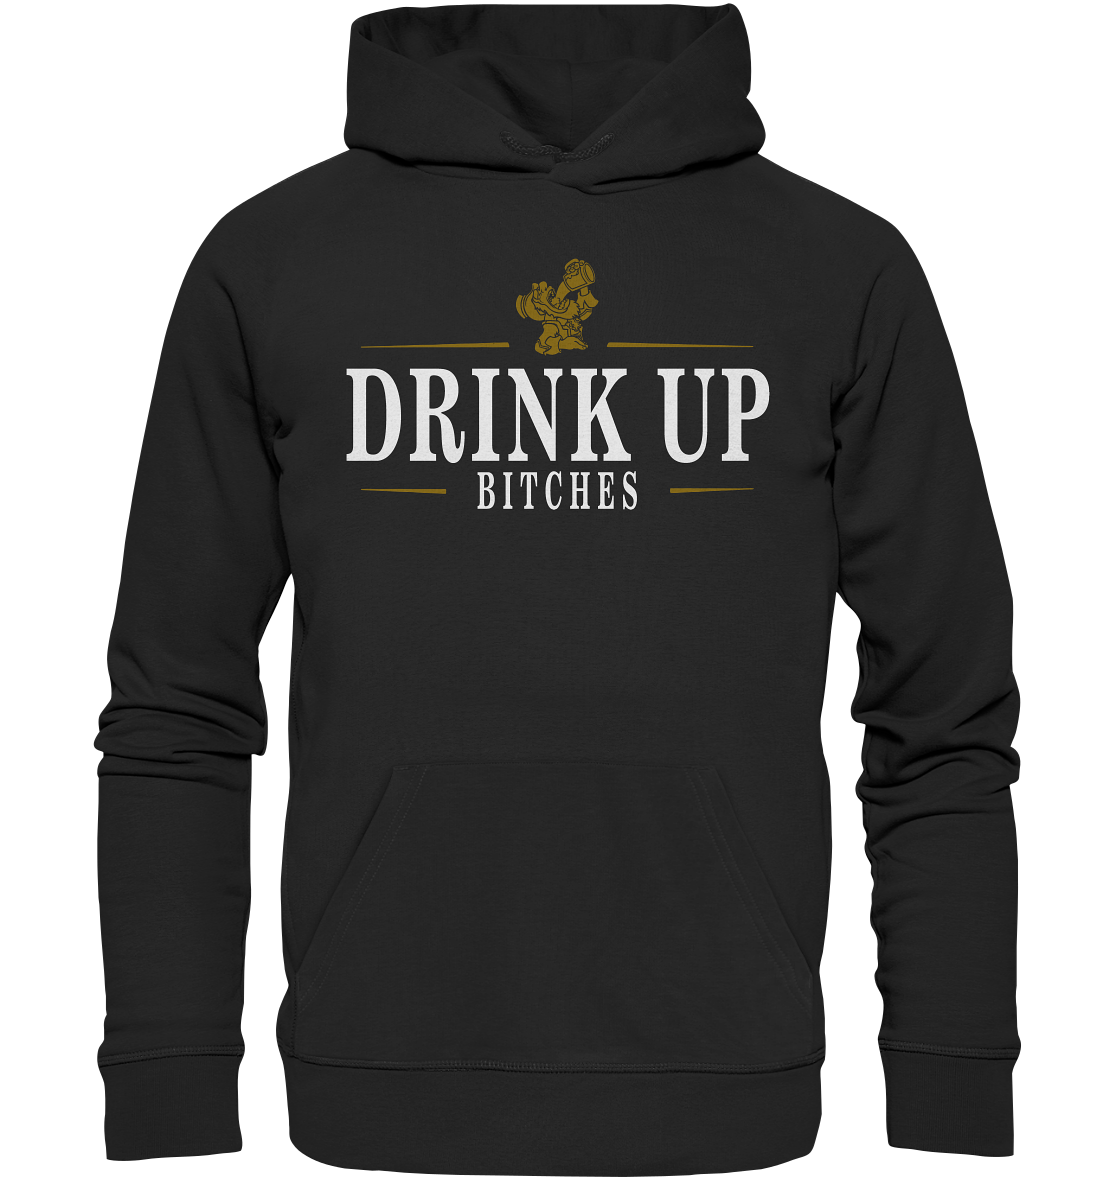 Drink Up "Bitches" - Premium Unisex Hoodie